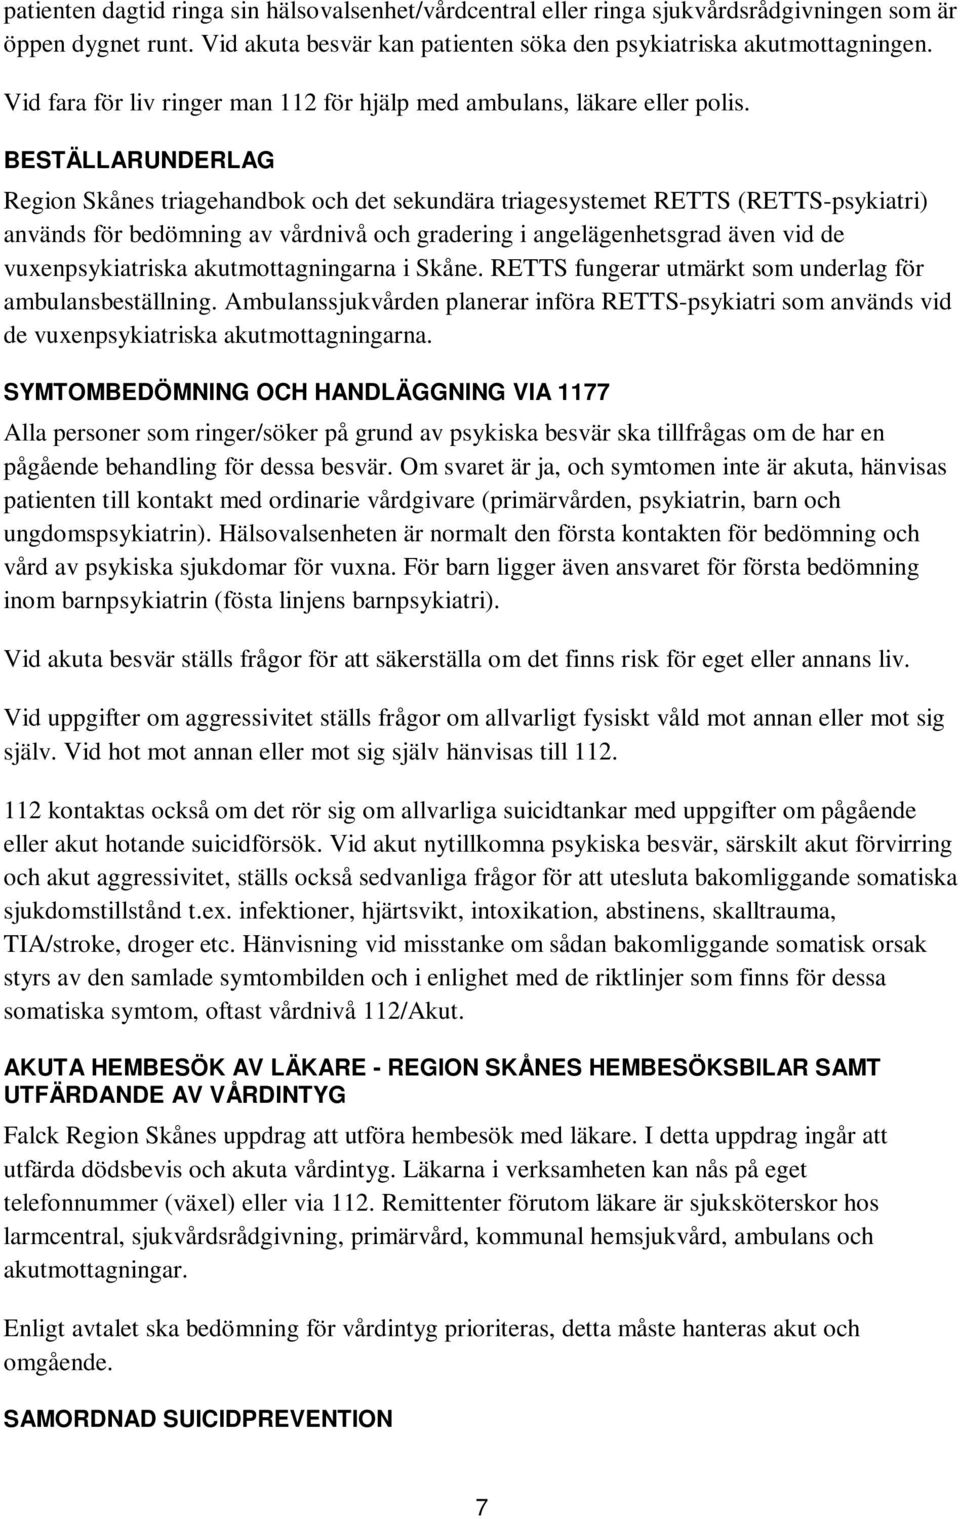 BESTÄLLARUNDERLAG Region Skånes triagehandbok och det sekundära triagesystemet RETTS (RETTS-psykiatri) används för bedömning av vårdnivå och gradering i angelägenhetsgrad även vid de